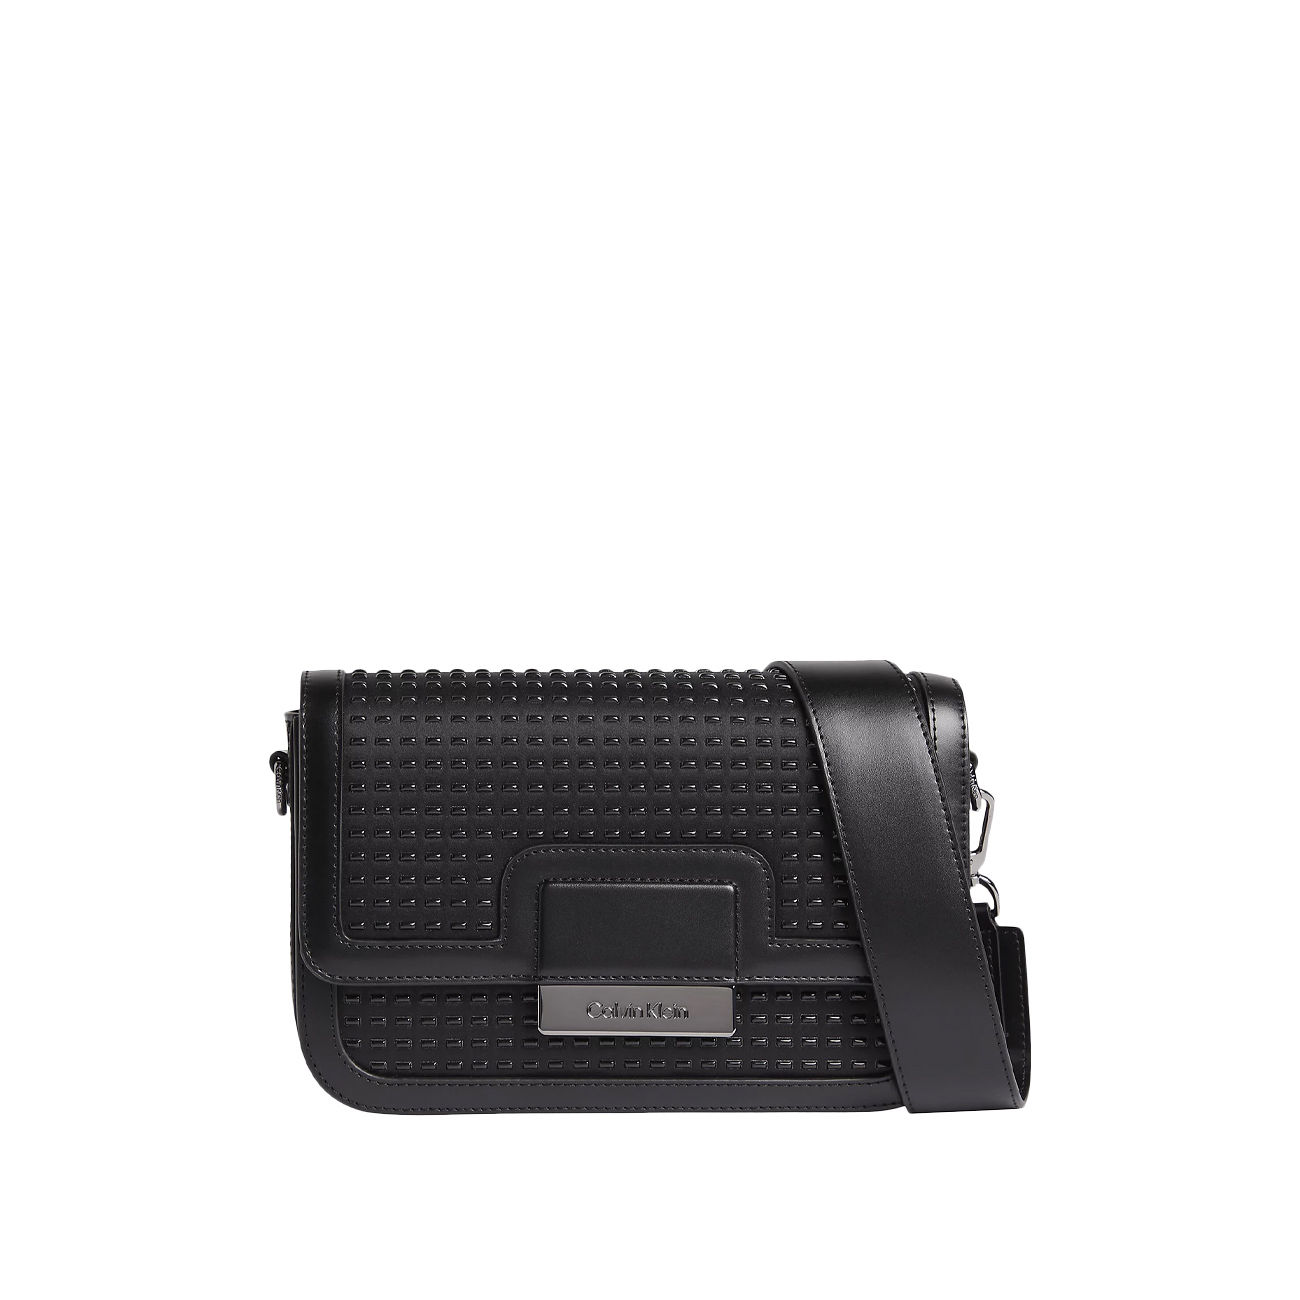 Calvin Klein Black Leather Shoulder Bag RN54163 Good